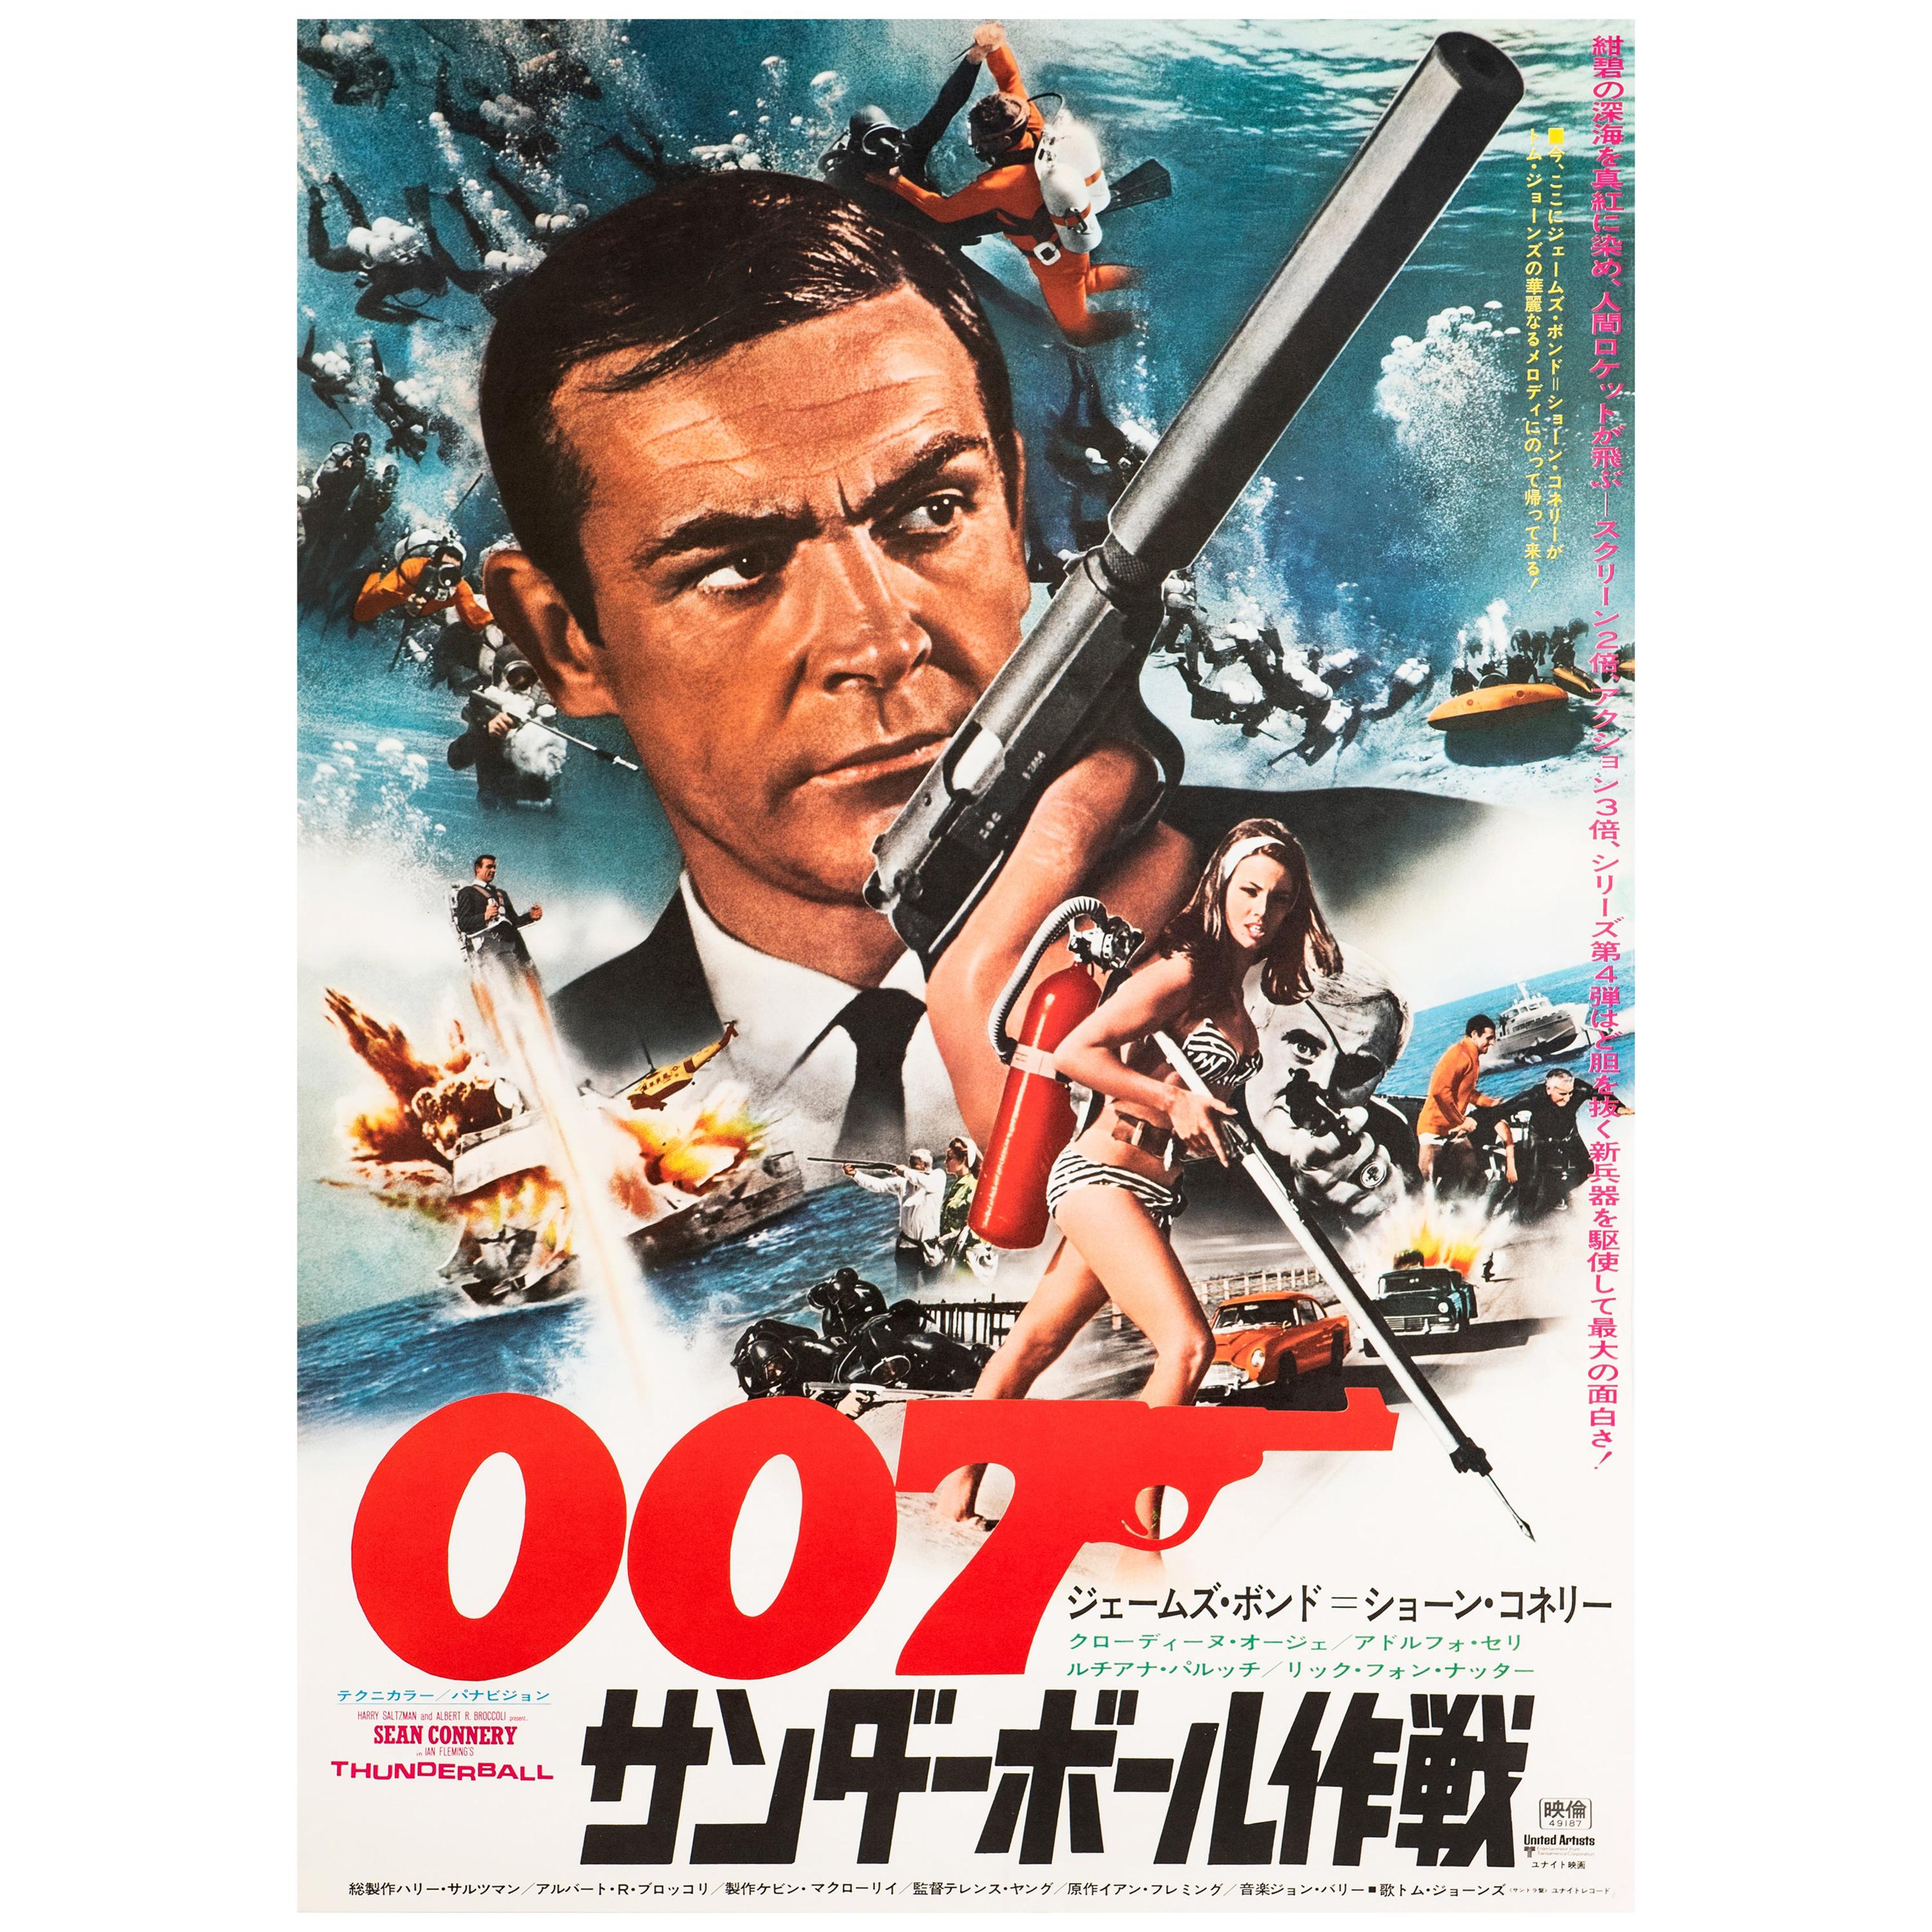 James Bond 'Thunderball' Original Vintage Movie Poster, Japanese, 1974